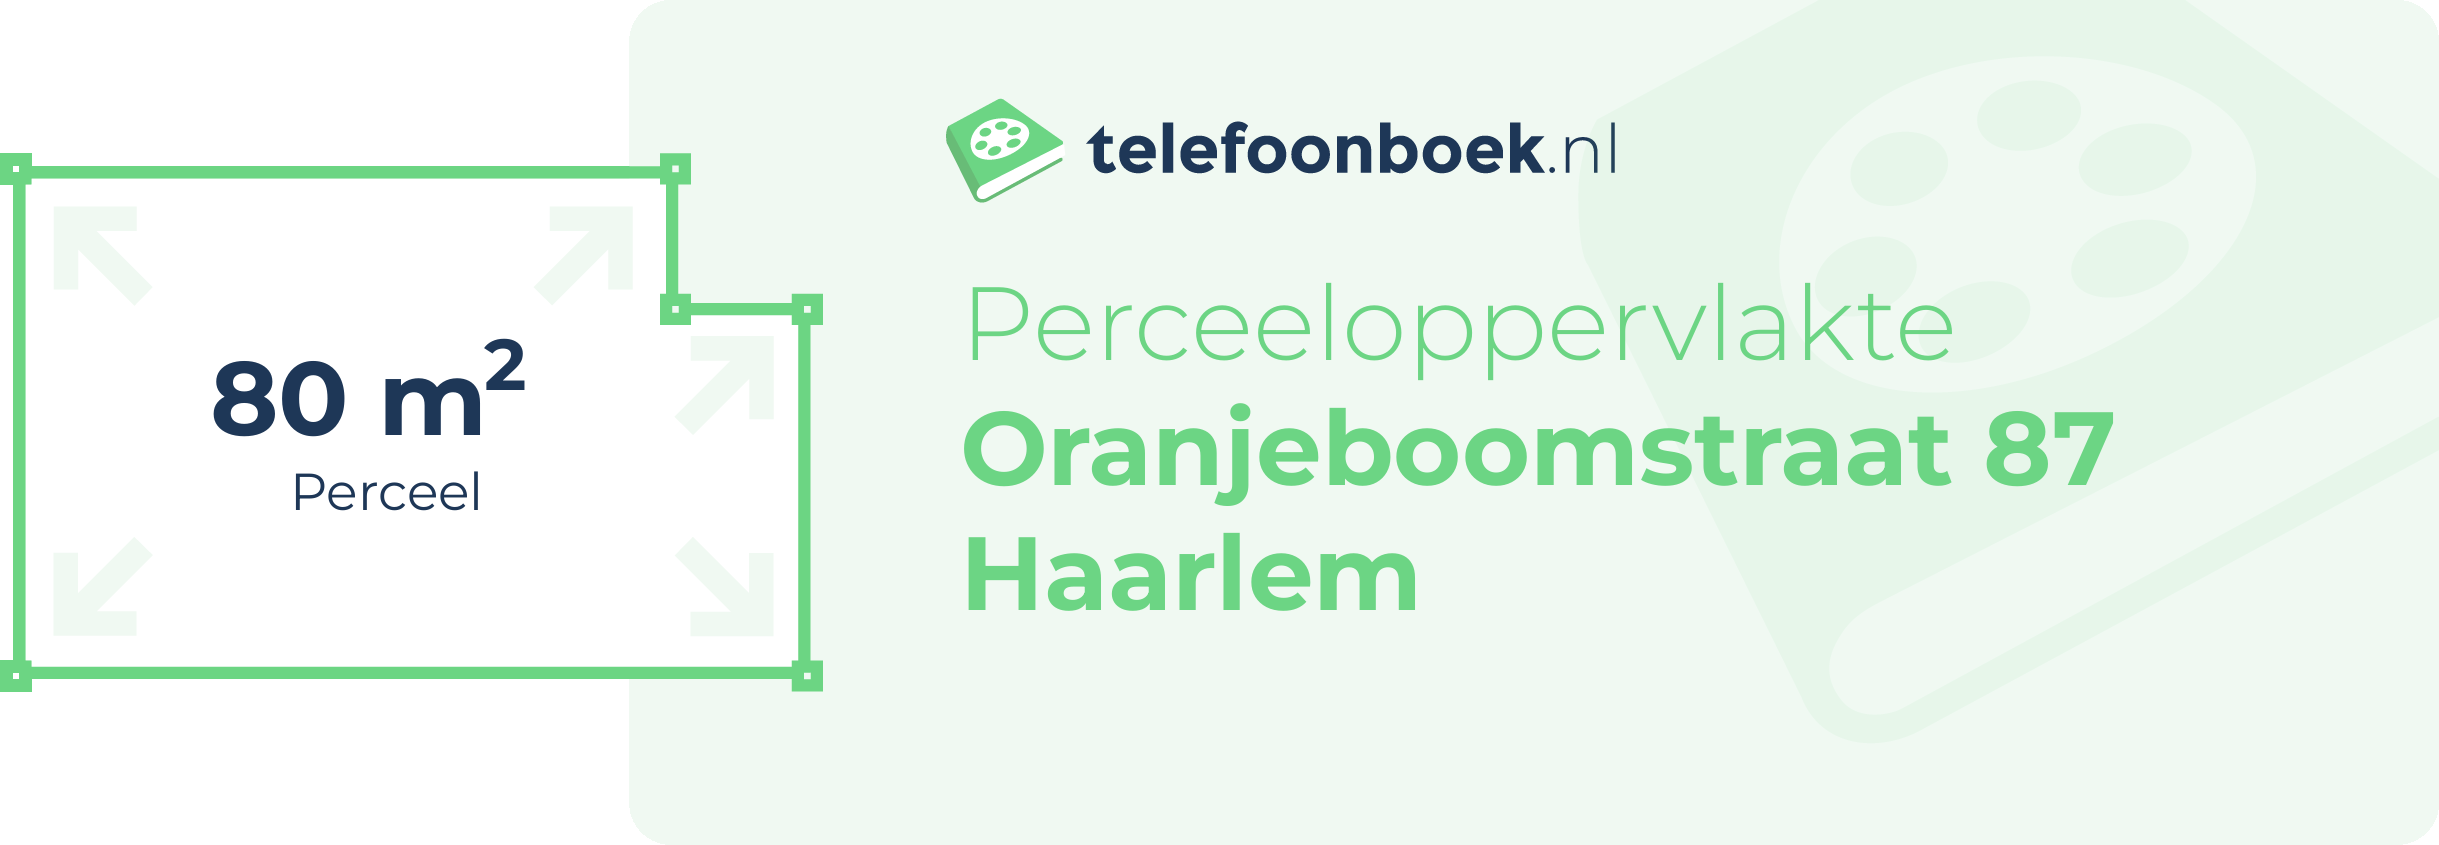 Perceeloppervlakte Oranjeboomstraat 87 Haarlem